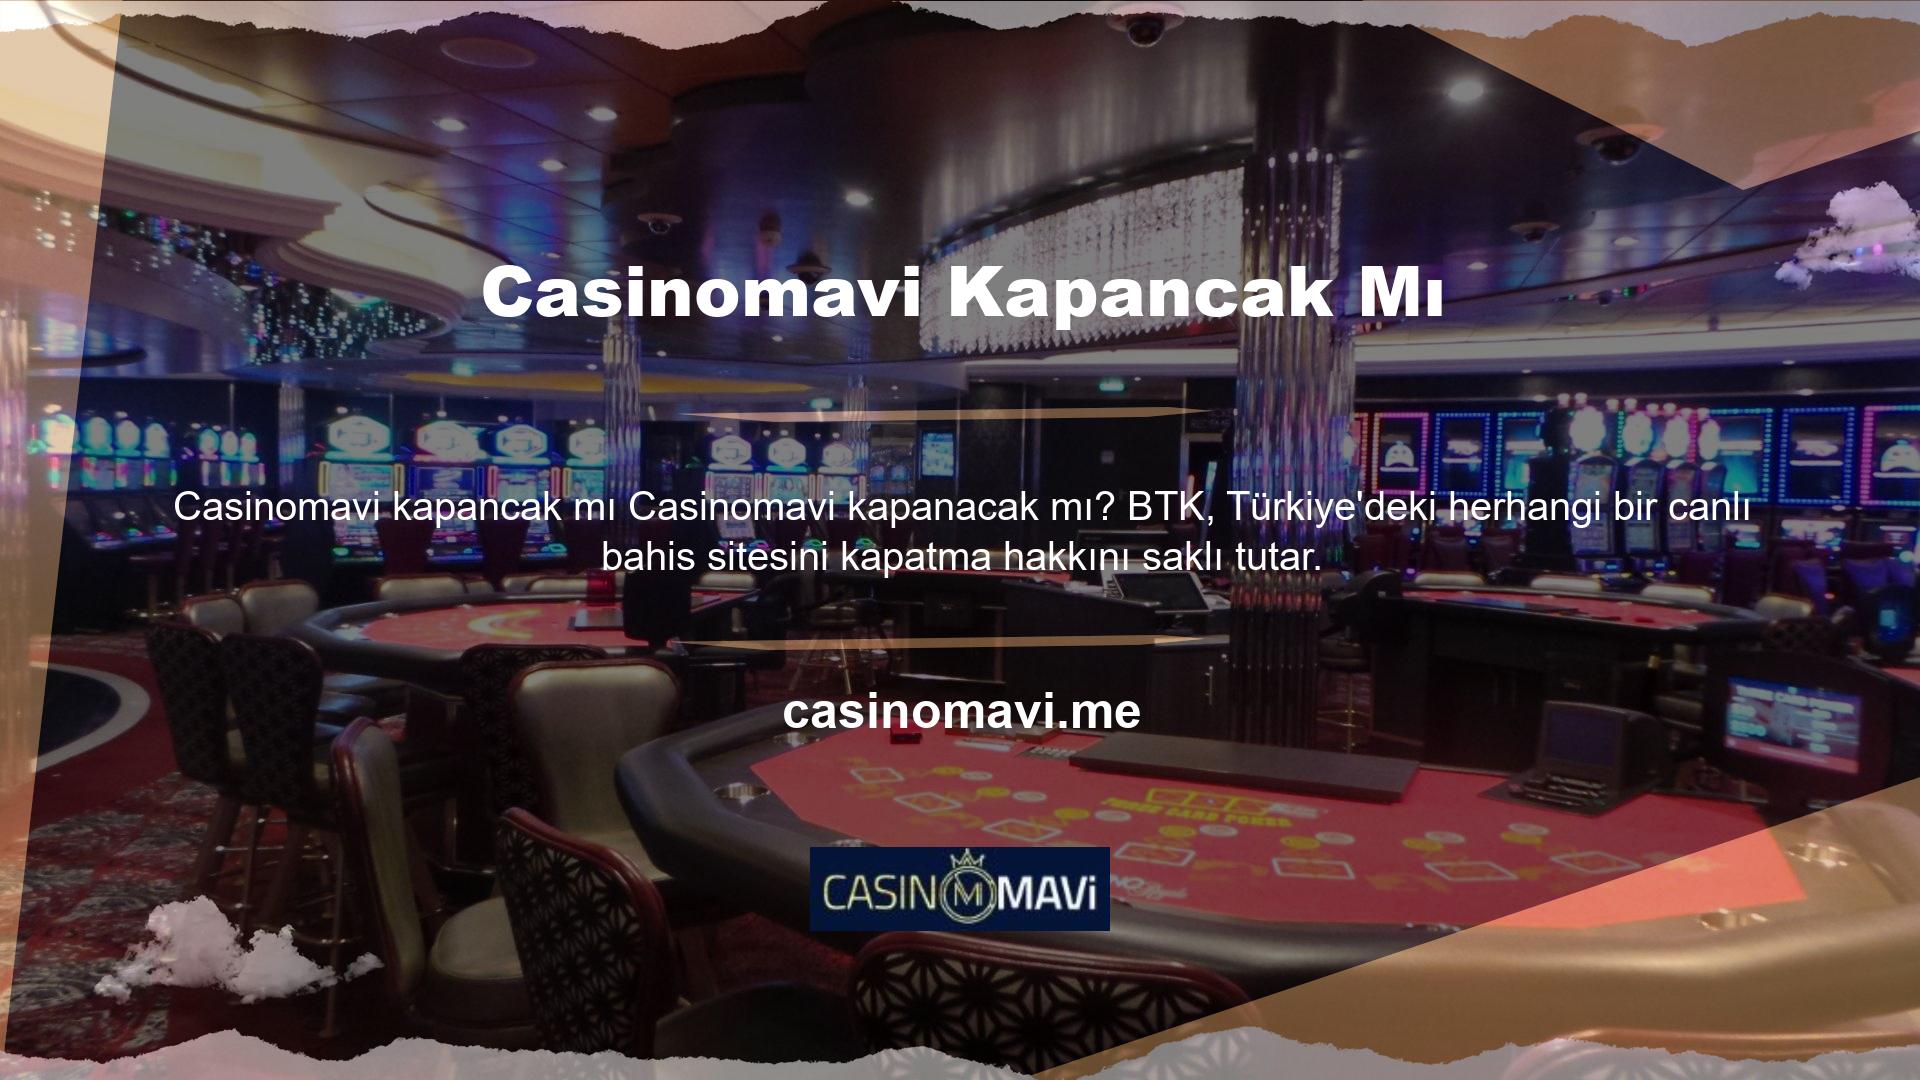 Casinomavi ajansı, ülkemizde yasaklanan oyunlar nedeniyle çevrimiçi casino sitelerine erişimi engellemek için adımlar attı